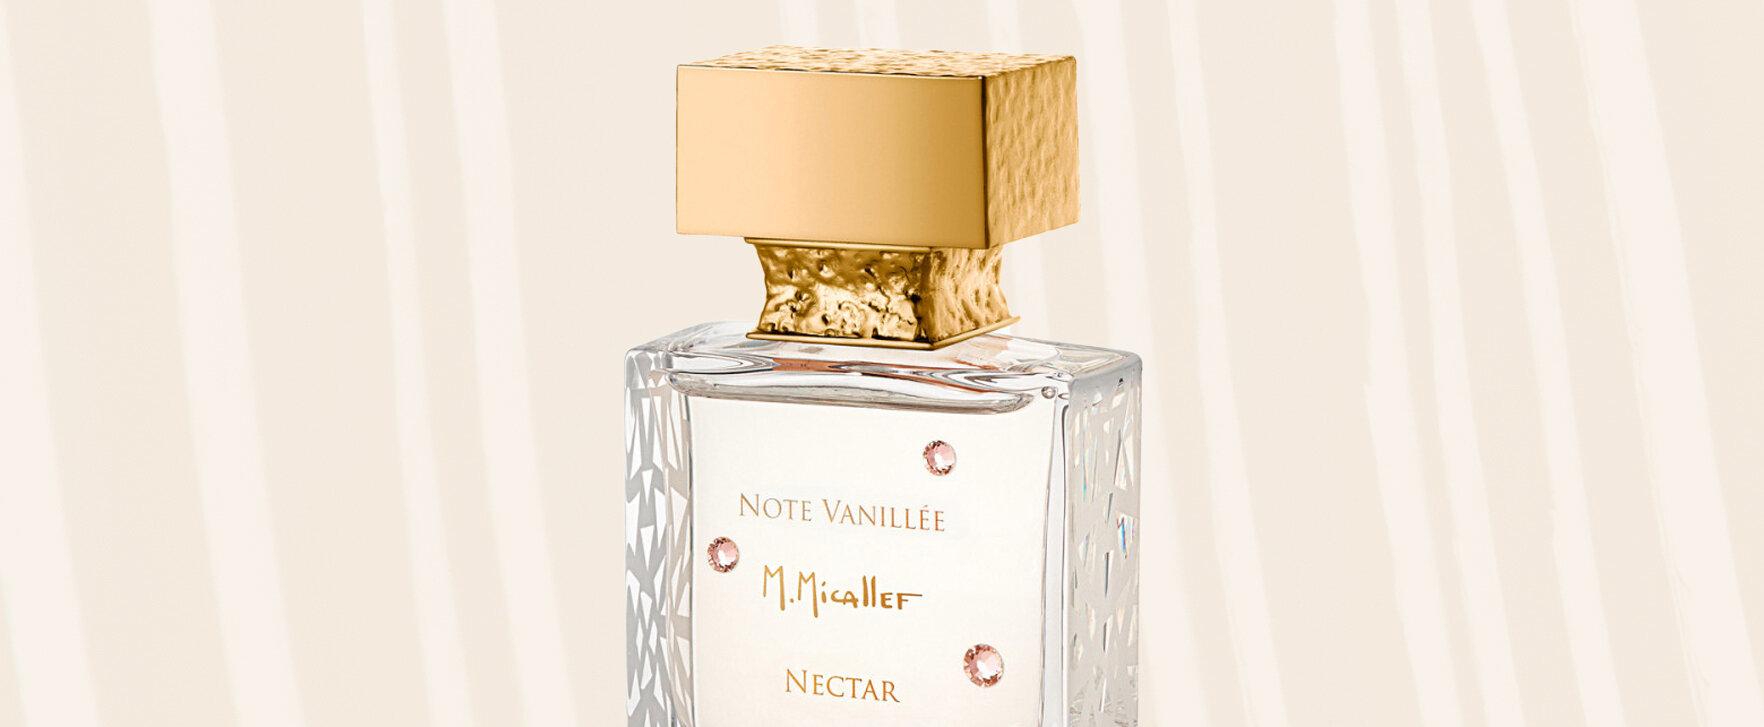 „Note Vanillée Nectar“ - M. Micallef lanciert neuen Damenduft mit intensiven Vanillenoten